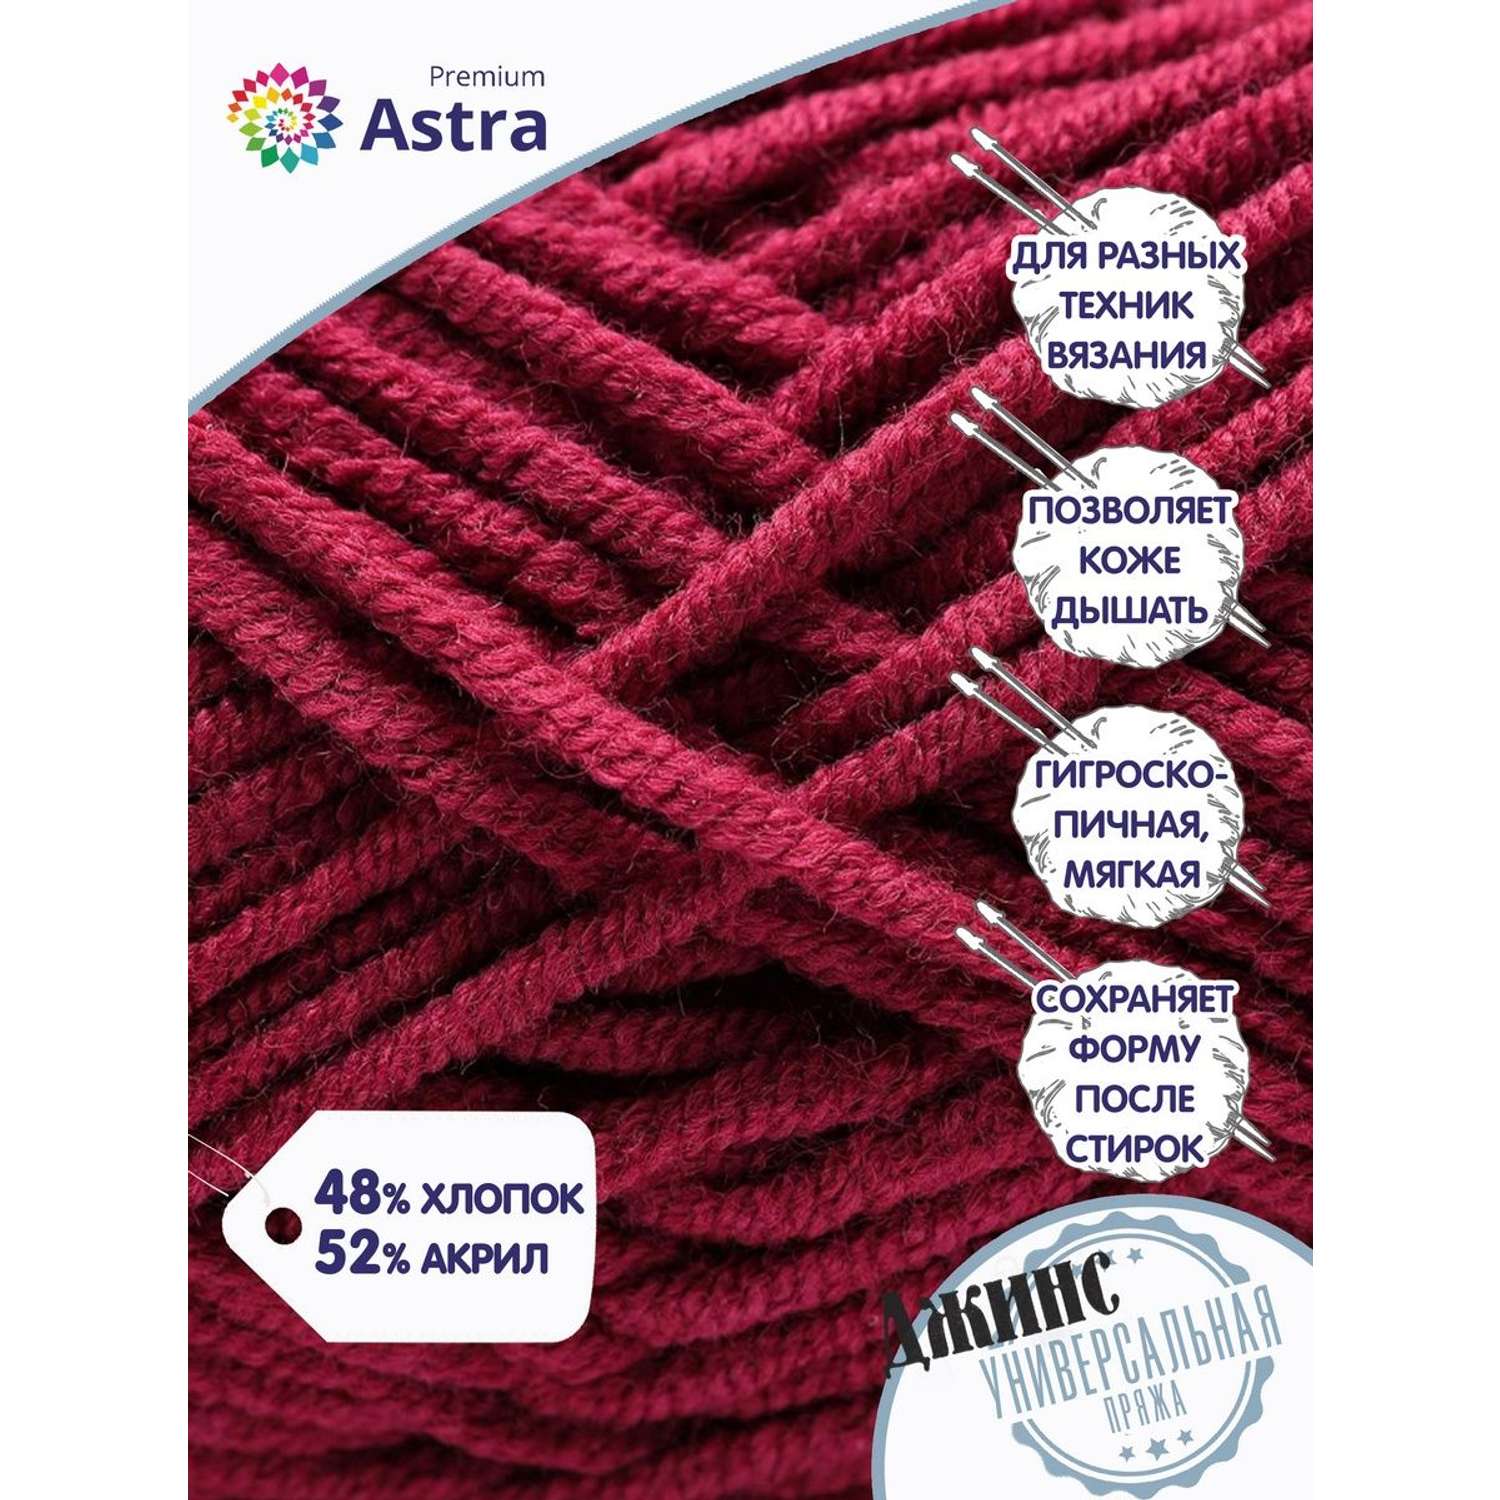 Пряжа для вязания Astra Premium джинс для повседневной одежды акрил хлопок 50 гр 135 м 190 темно-красный 4 мотка - фото 2